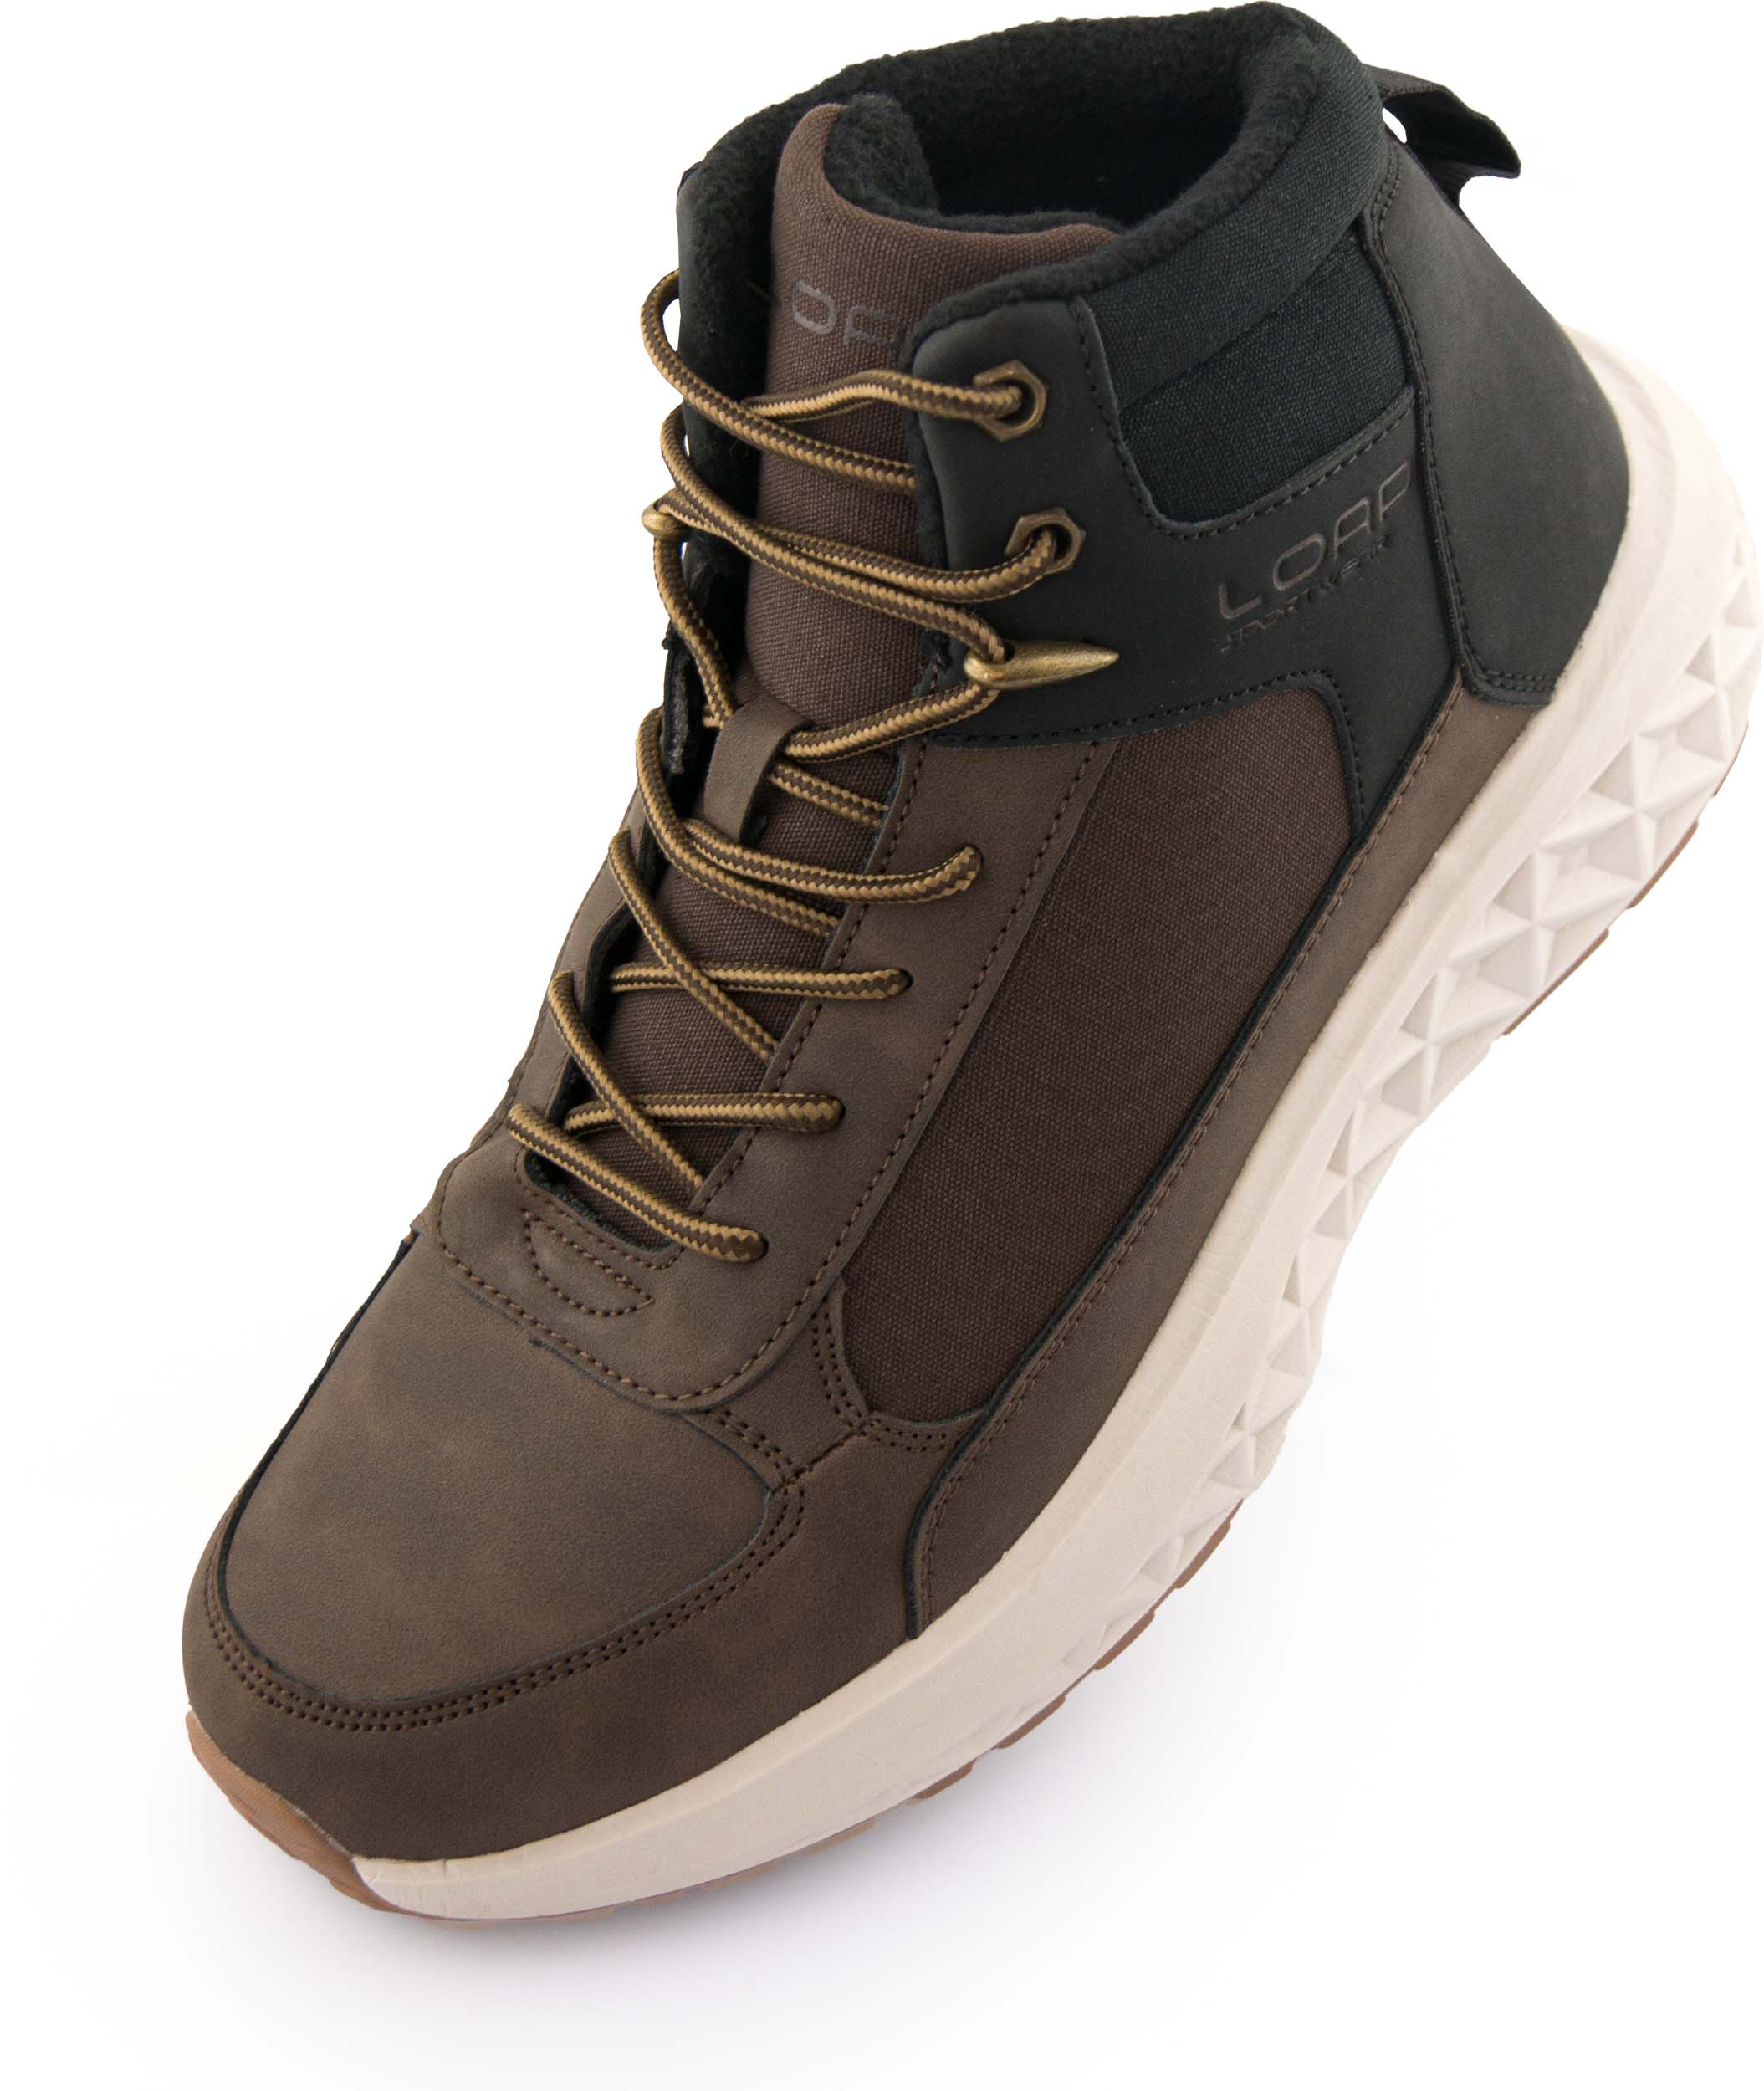 Pánské zimní boty LOAP WESTER brown|41